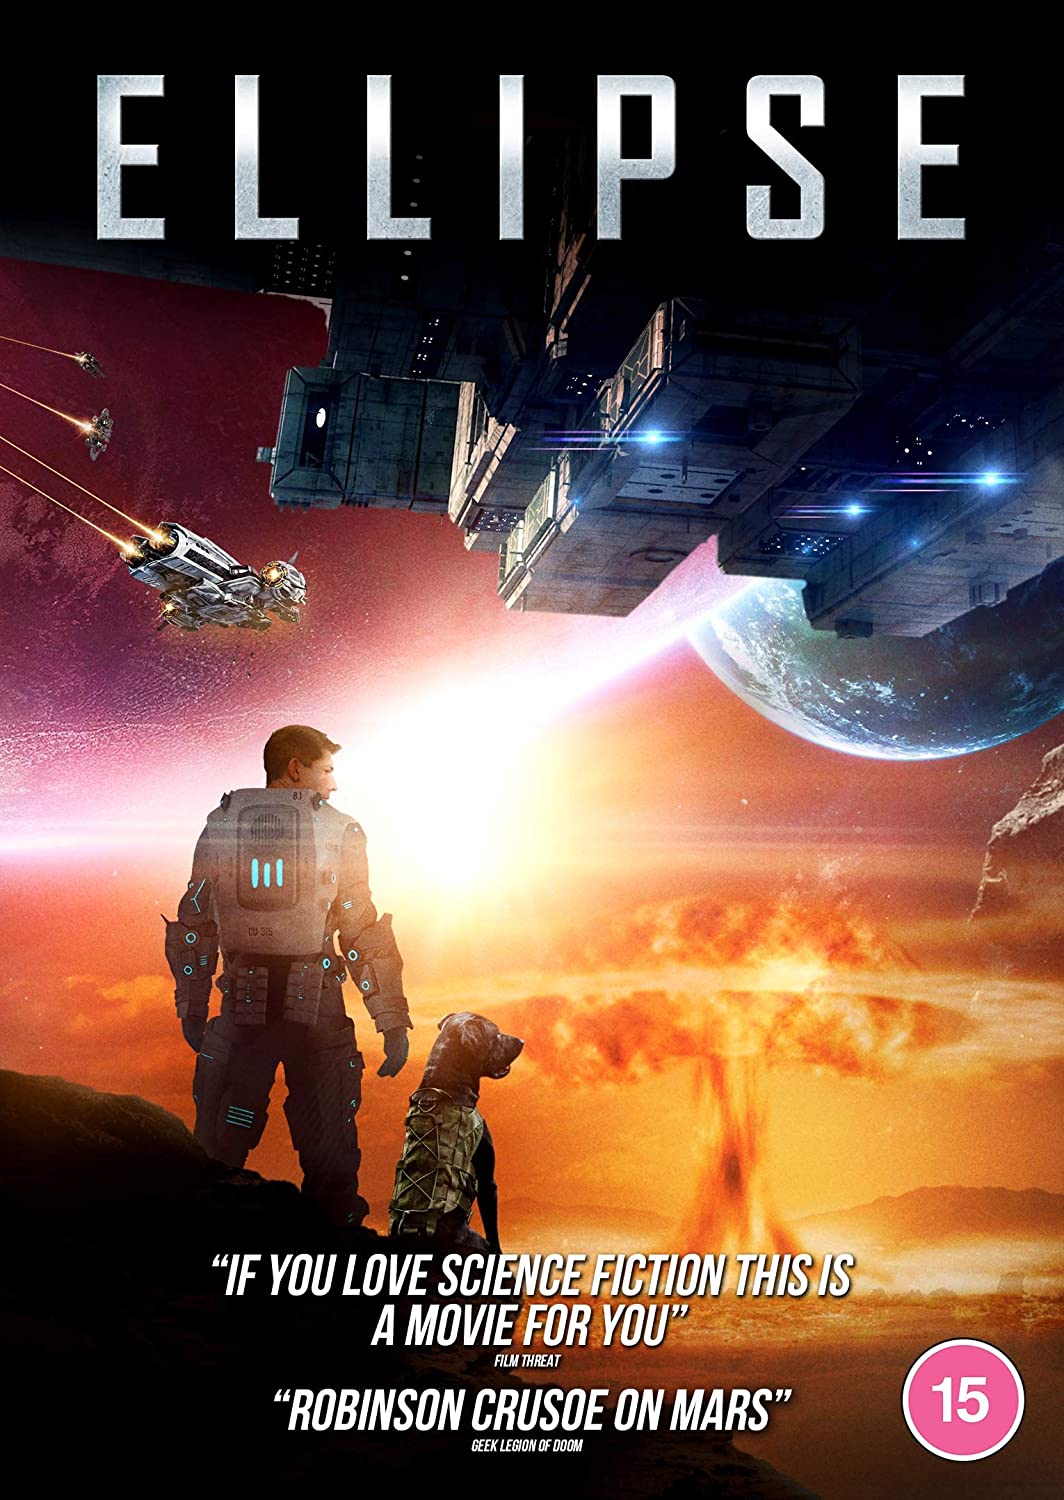 Ellipse - Sci-Fi [DVD]